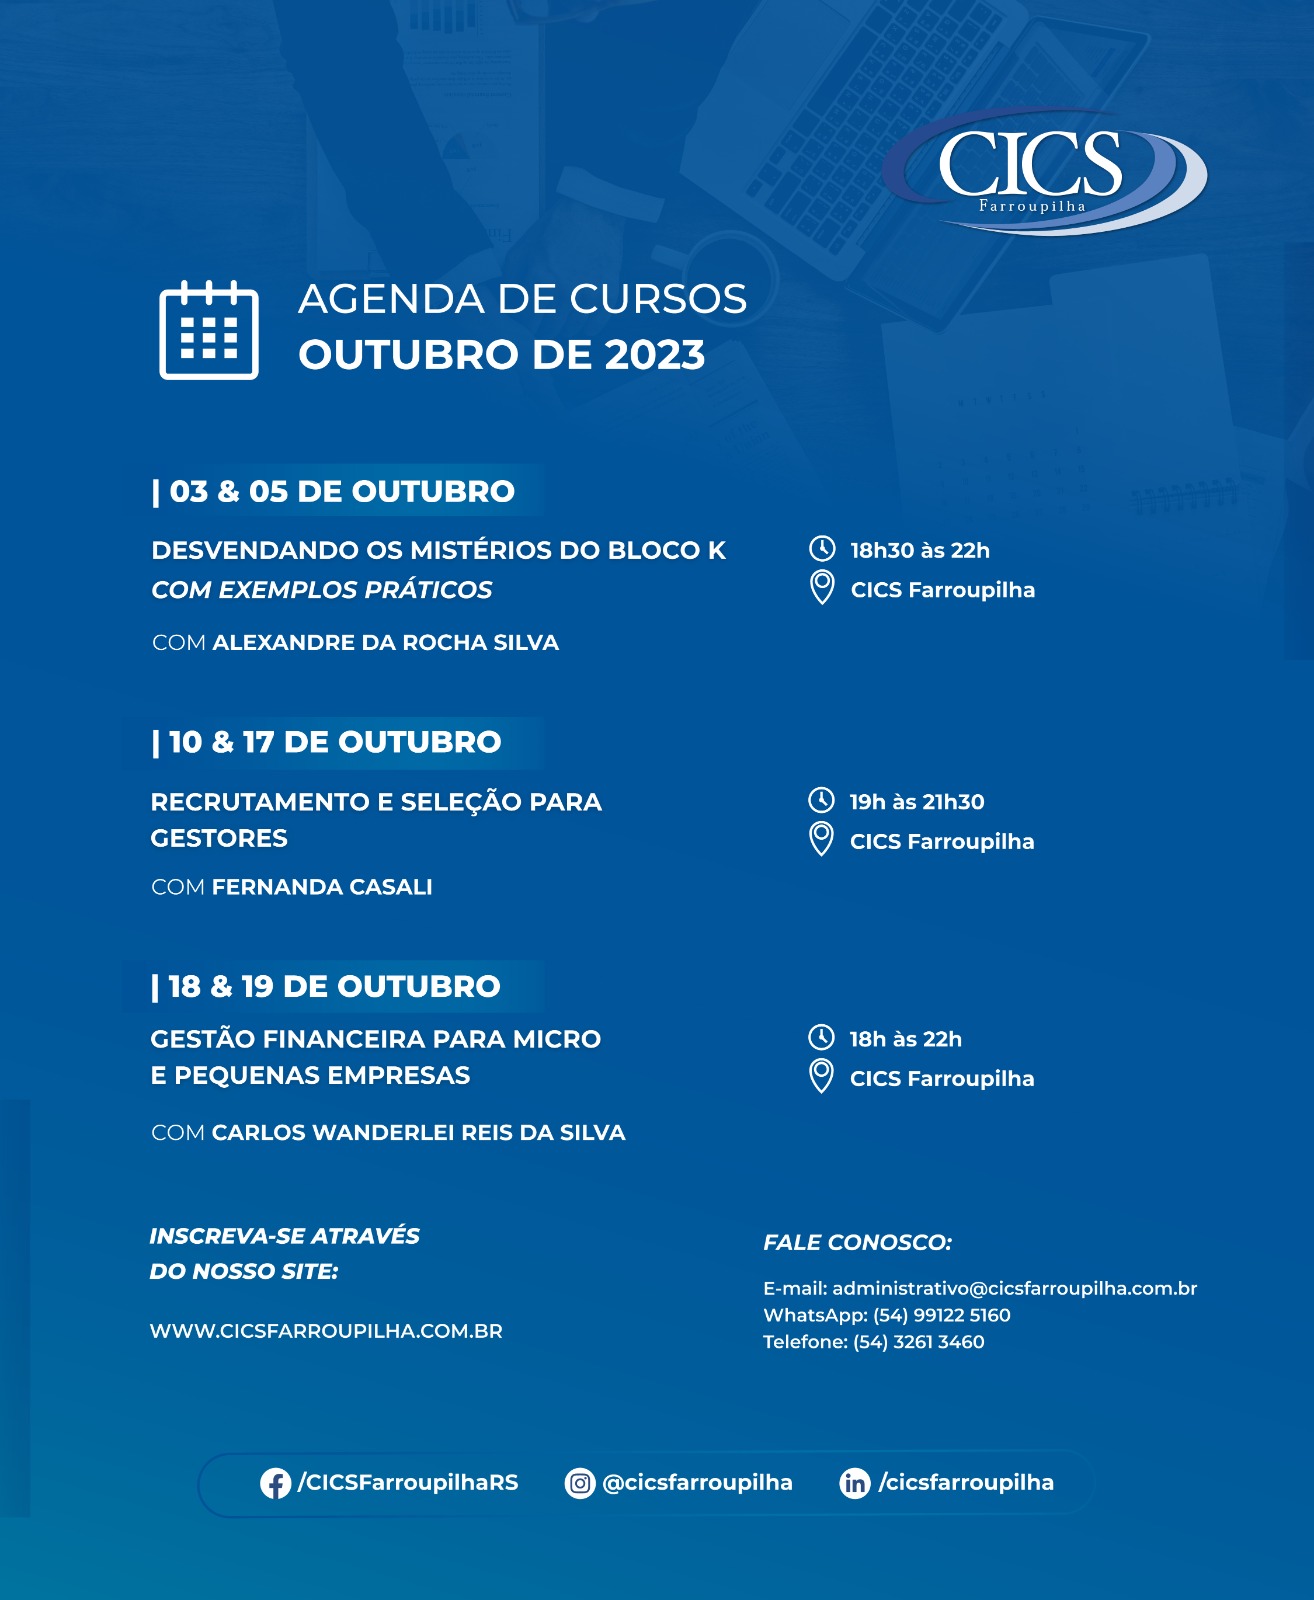 AGENDA DE CURSOS OUTUBRO DE 2023